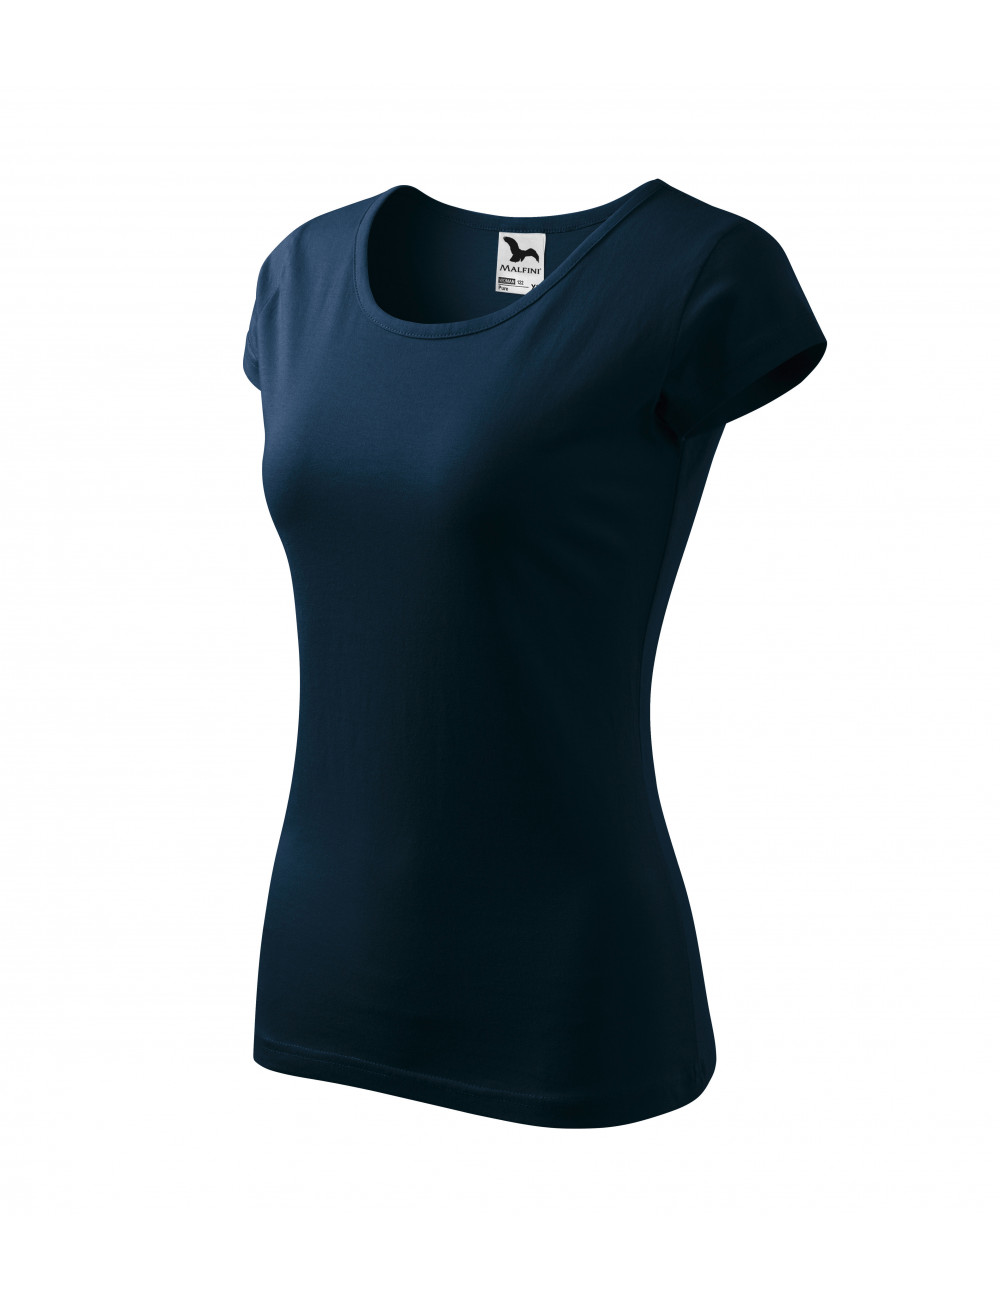 Women`s t-shirt pure 122 navy blue Adler Malfini